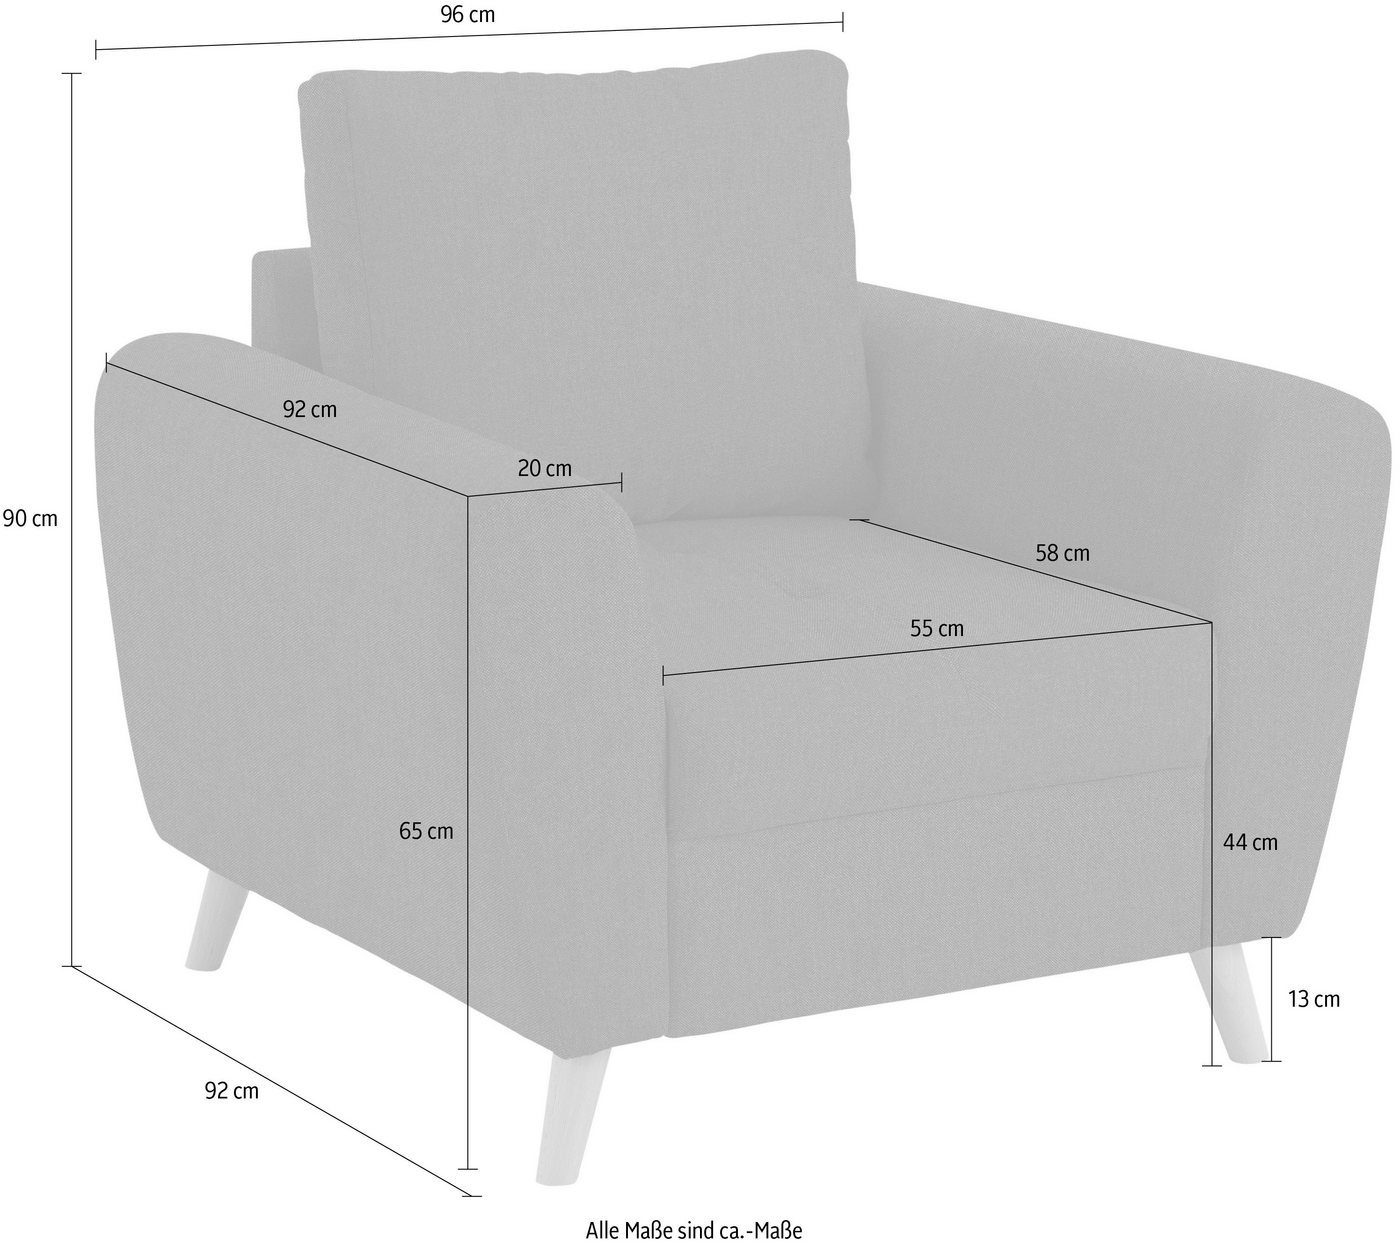 Home affaire Sessel Penelope Luxus, mit besonders hochwertiger Polsterung für bis zu 140 kg pro Sitzfläche von Home affaire